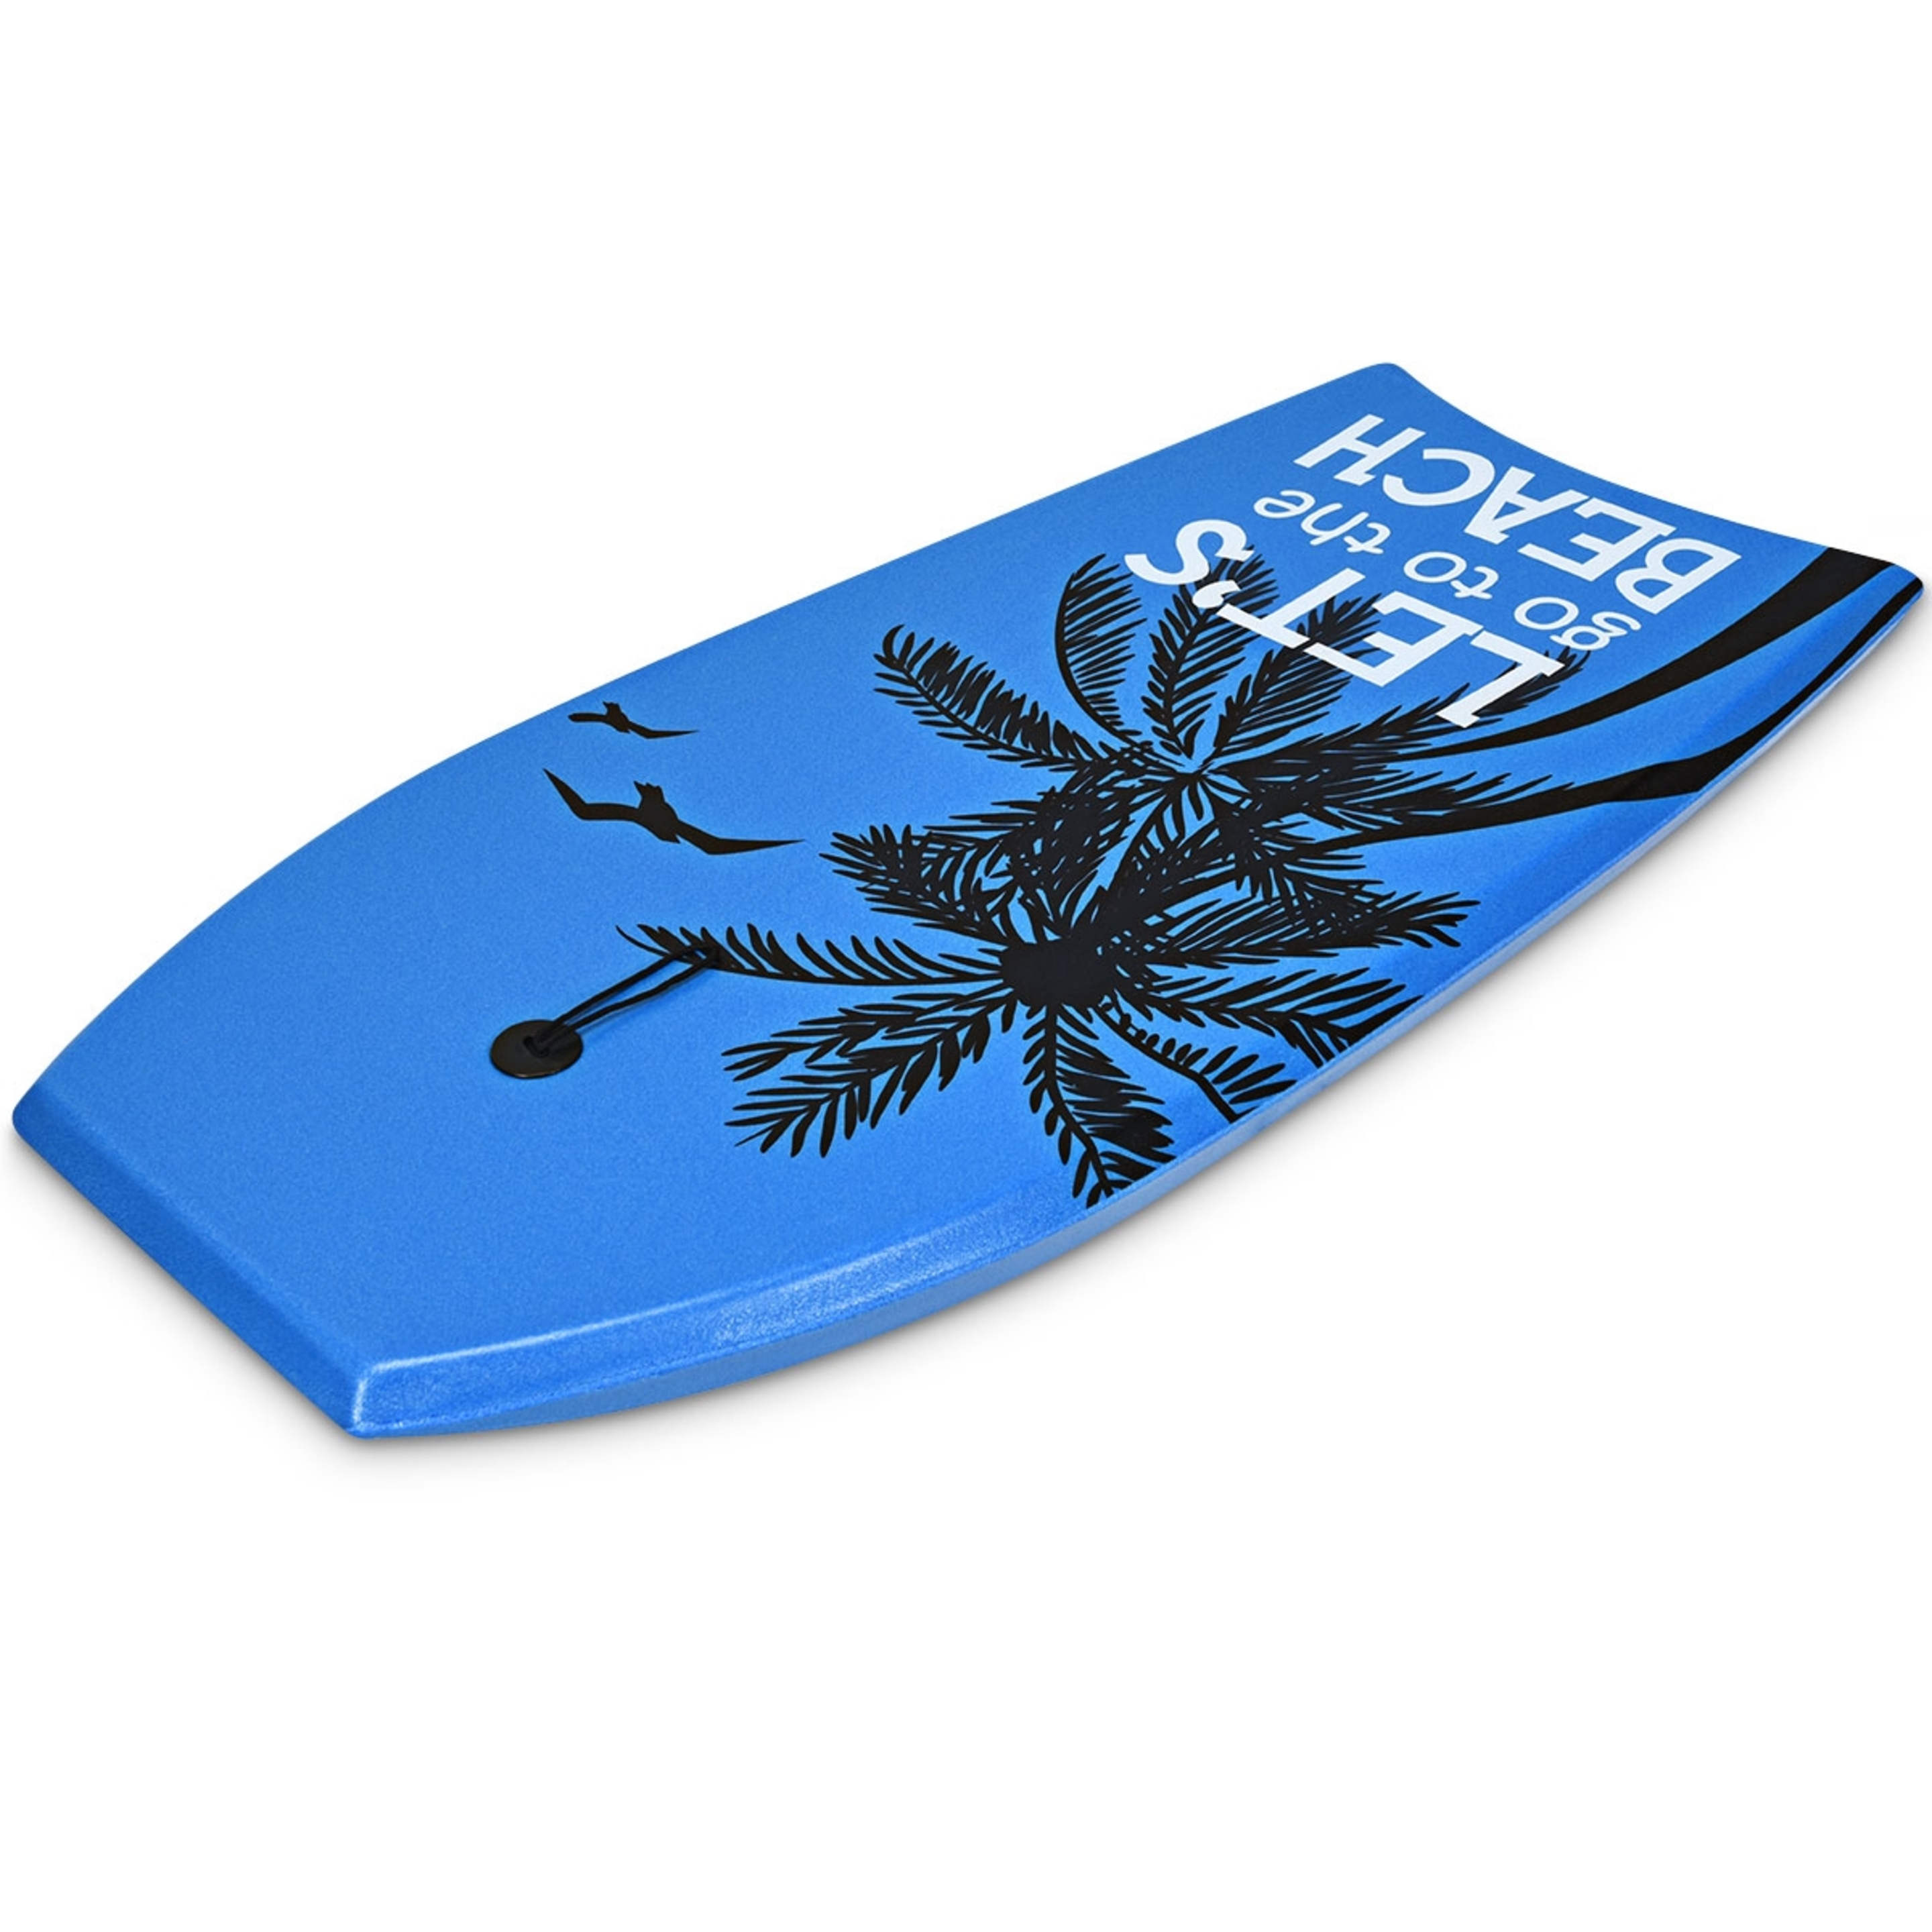 Costway Tabla De Surf Bodyboard Azul 104 X 51 Cm - Azul - Tabla de Surf  MKP